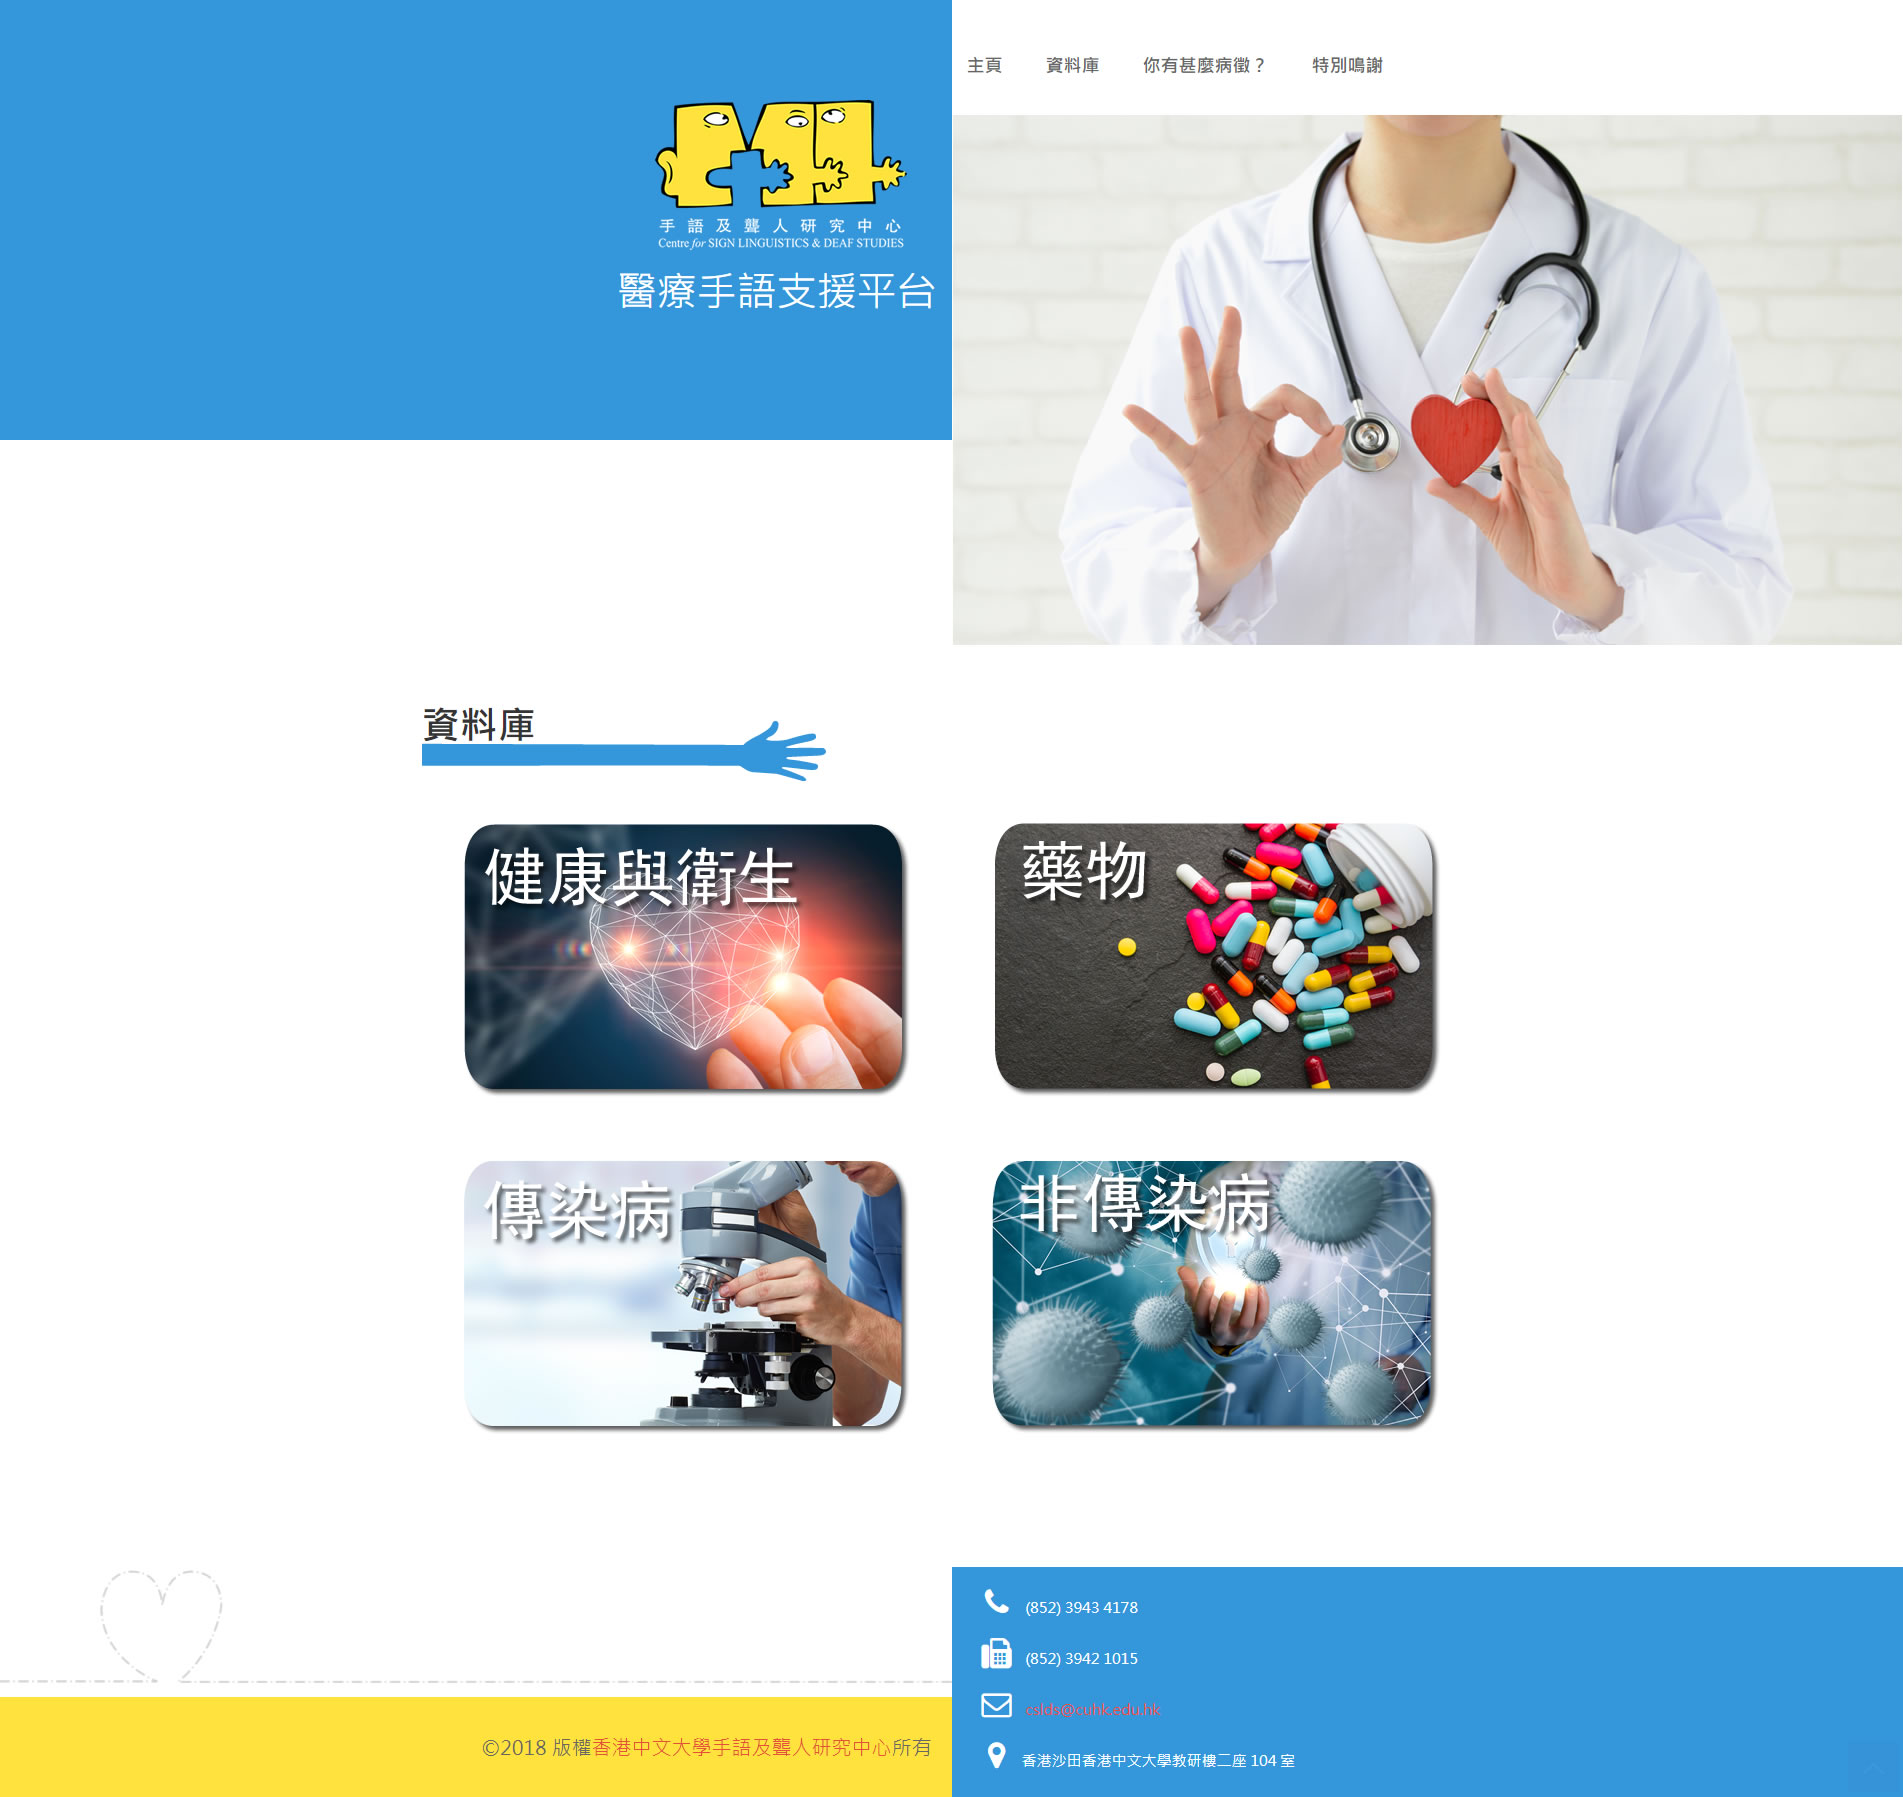 Hong Kong Sign Language Medical Databank